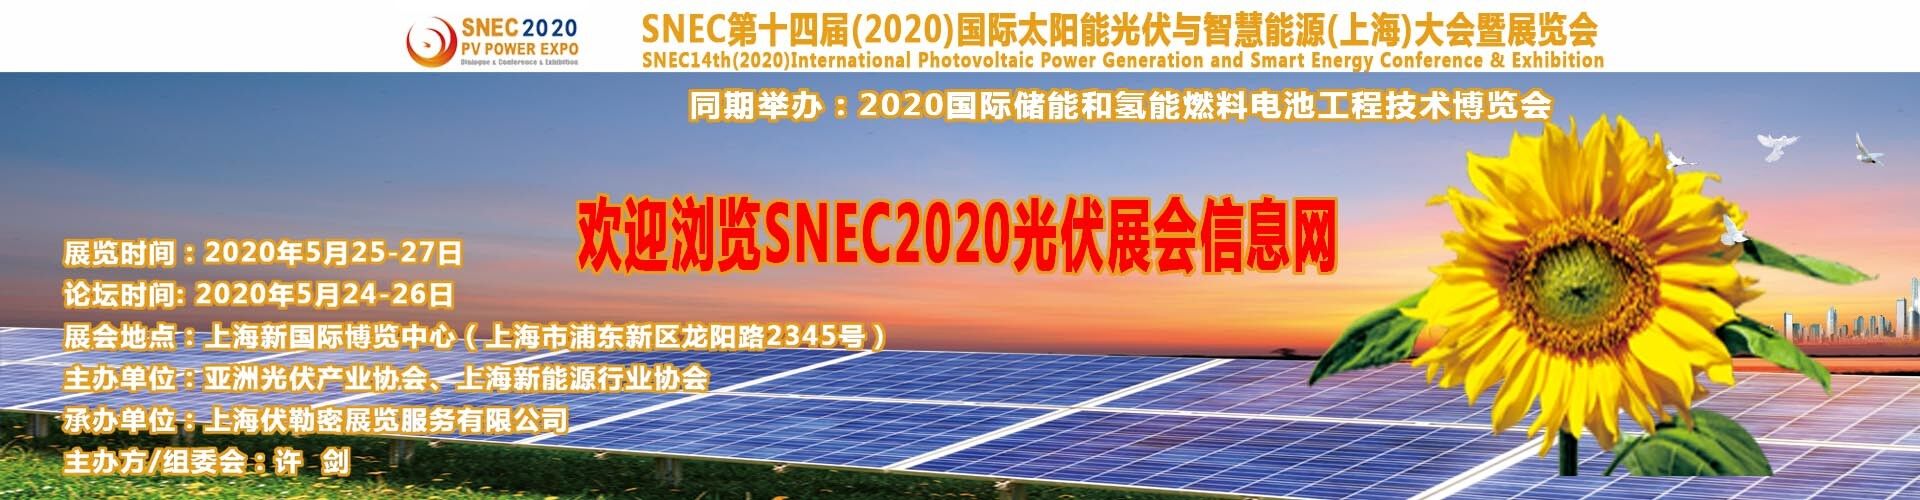 SNEC光伏展覽會網站/SNEC2020太陽能展會網站/SNEC上海太陽能展會網址